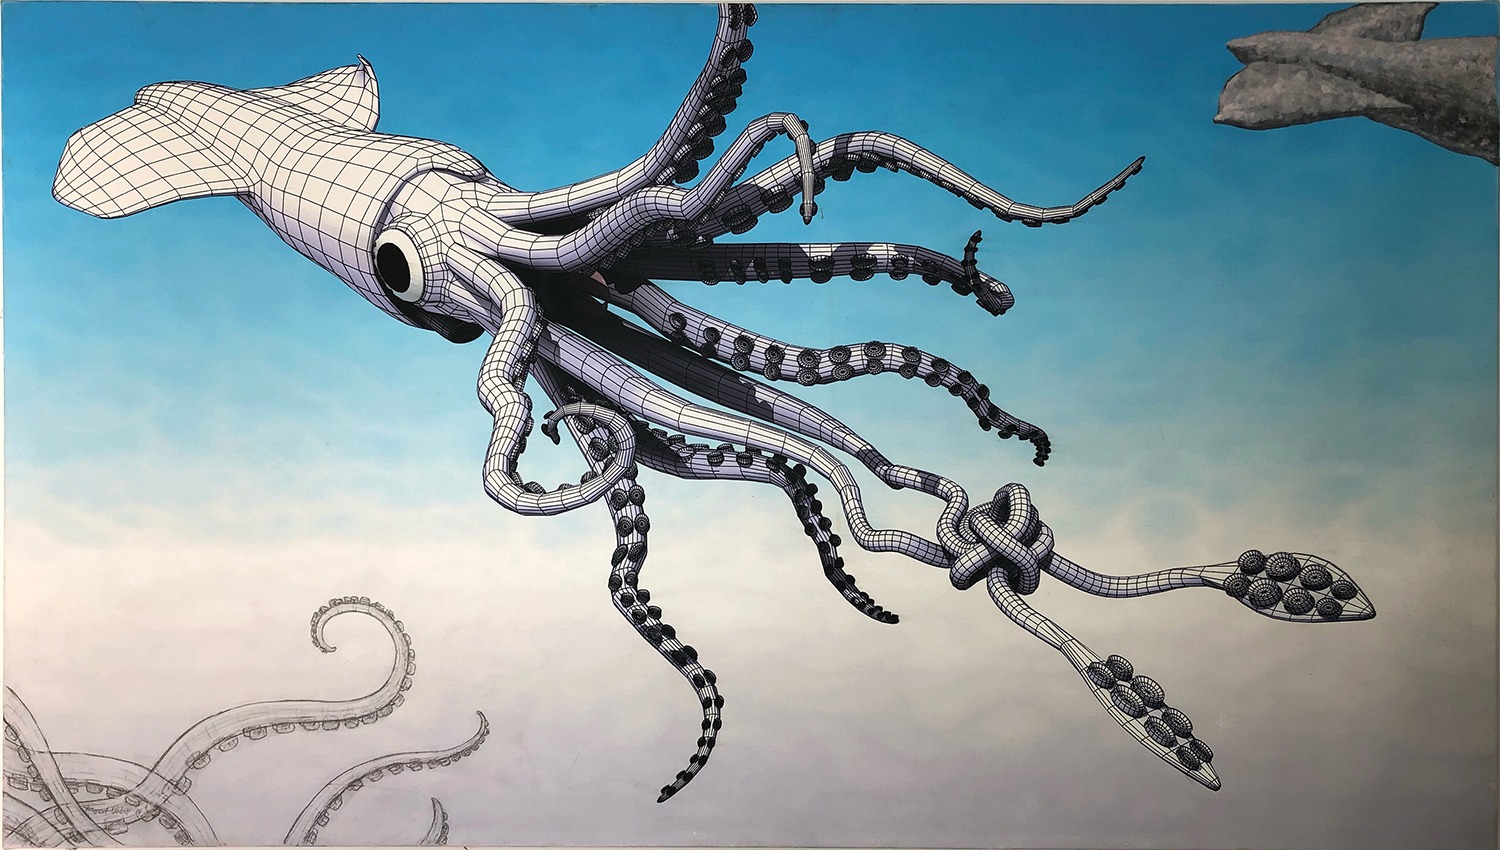 The Elusive Kraken, a mixed media painting by Rupert Nesbitt